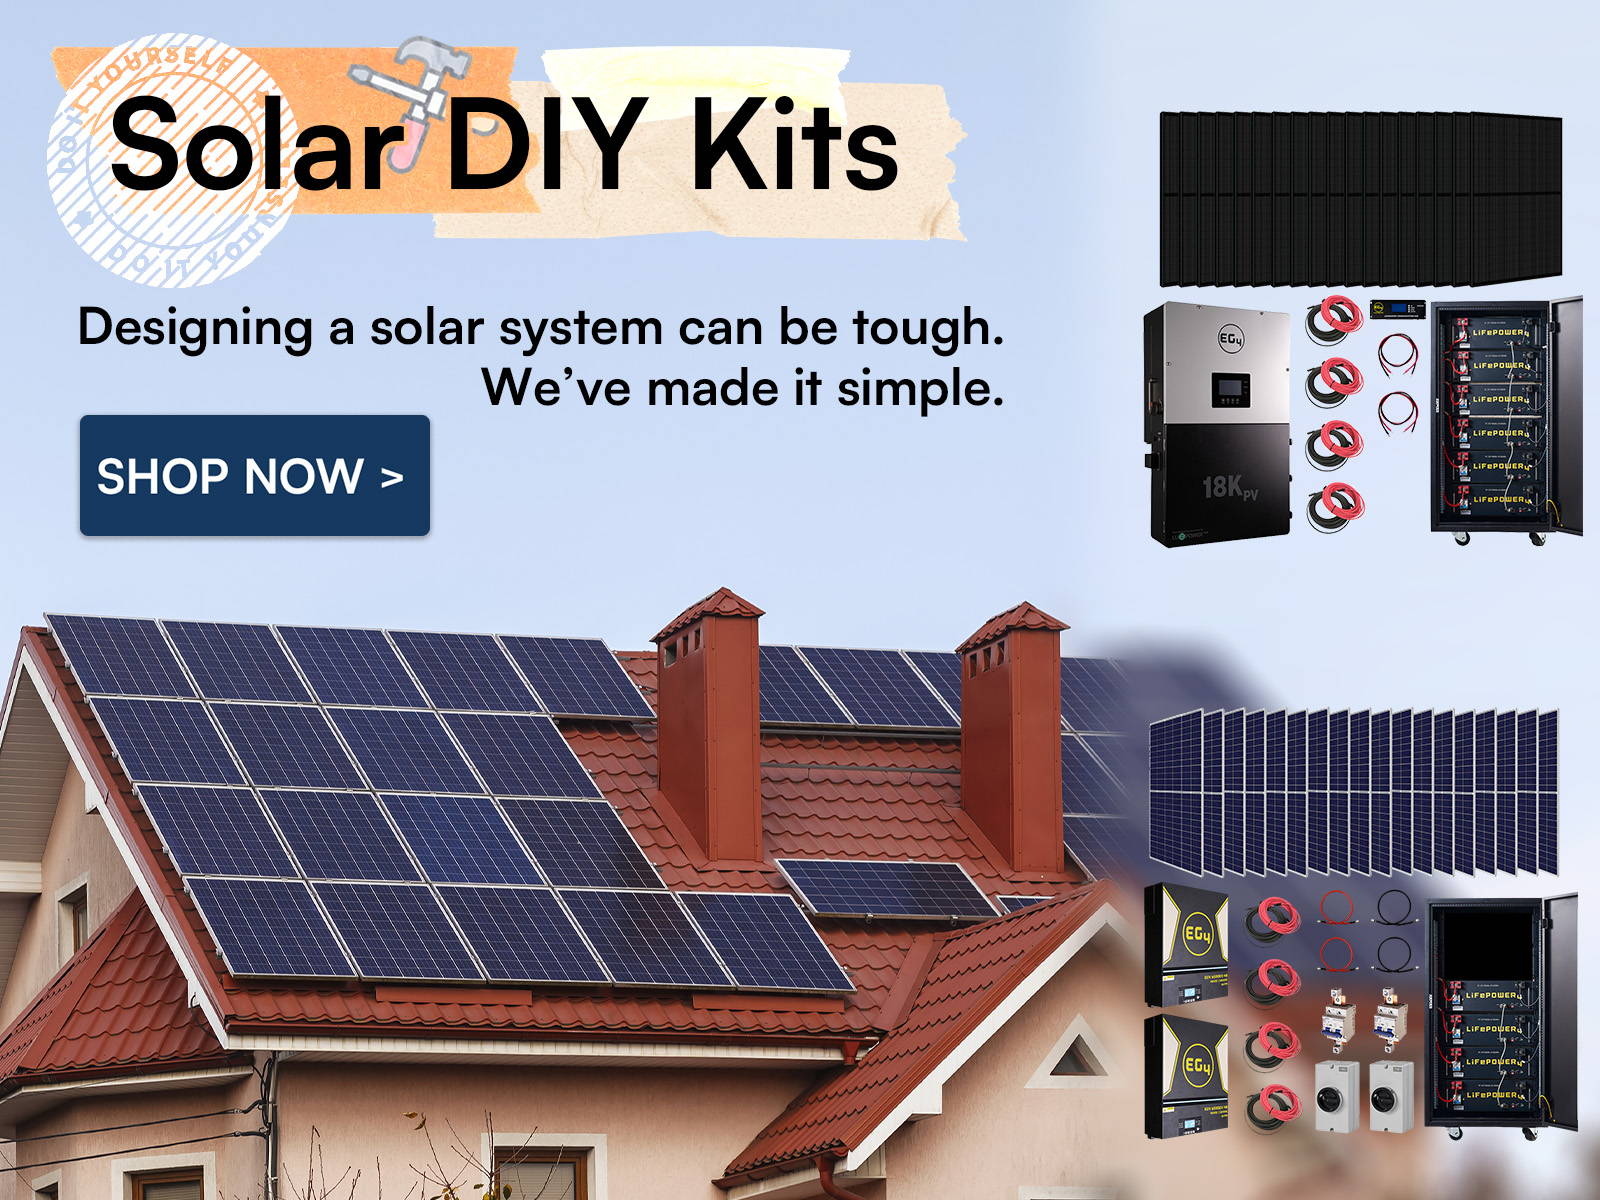 Signature Solar DIY Solar Kits